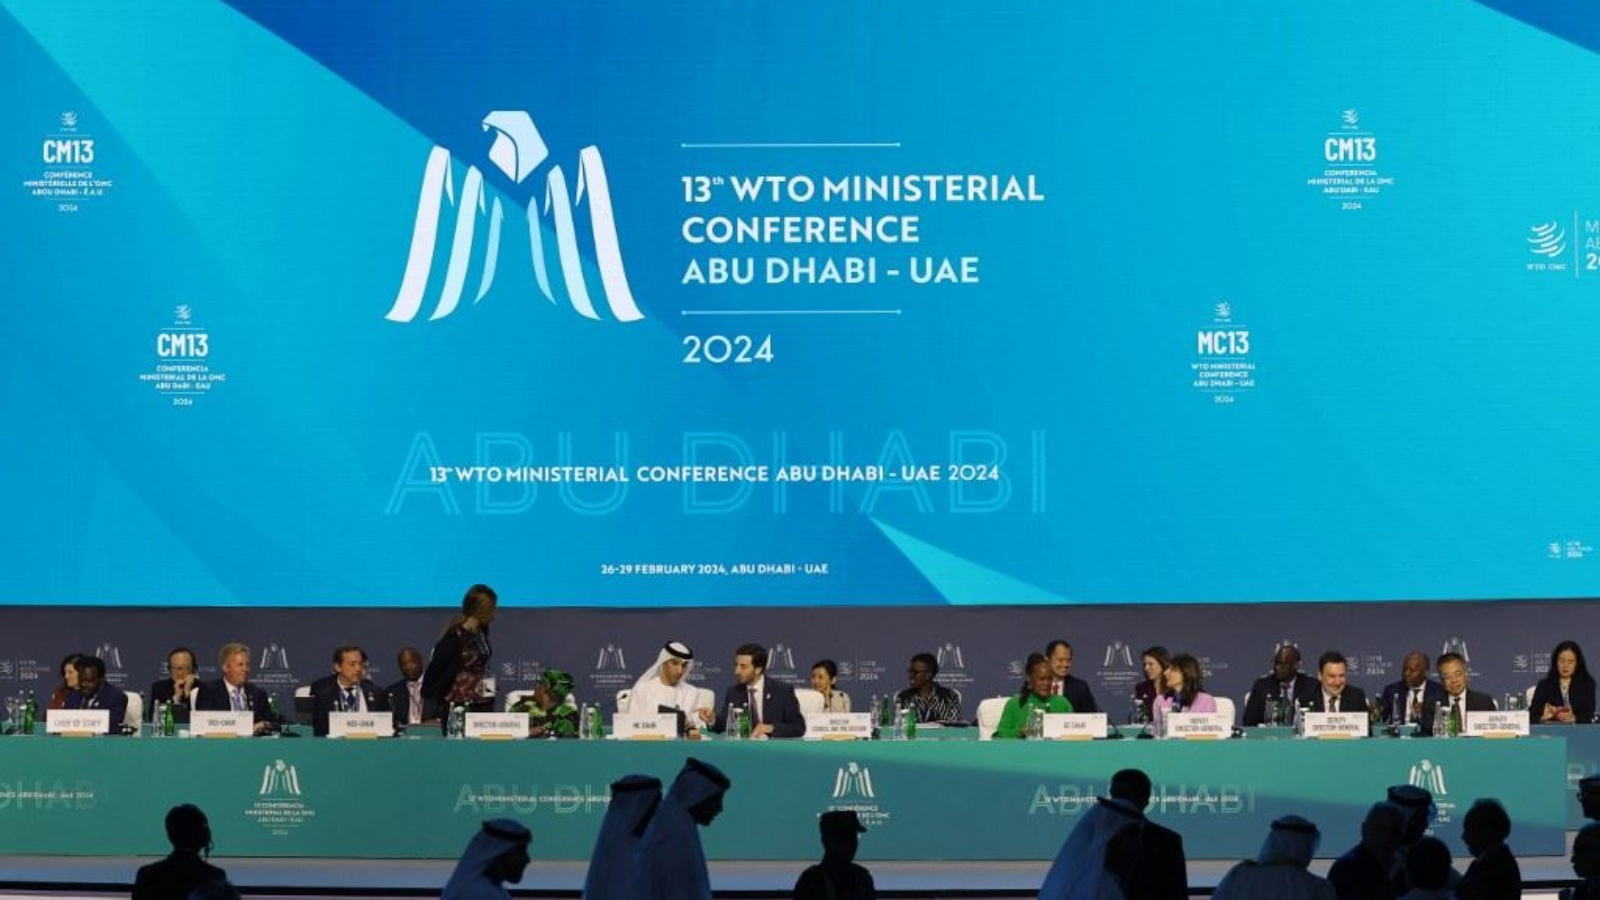 مندوبون يحضرون المؤتمر الوزاري الـ13 لمنظمة التجارة العالمية في أبوظبي 26 شباط (فبراير)2024 